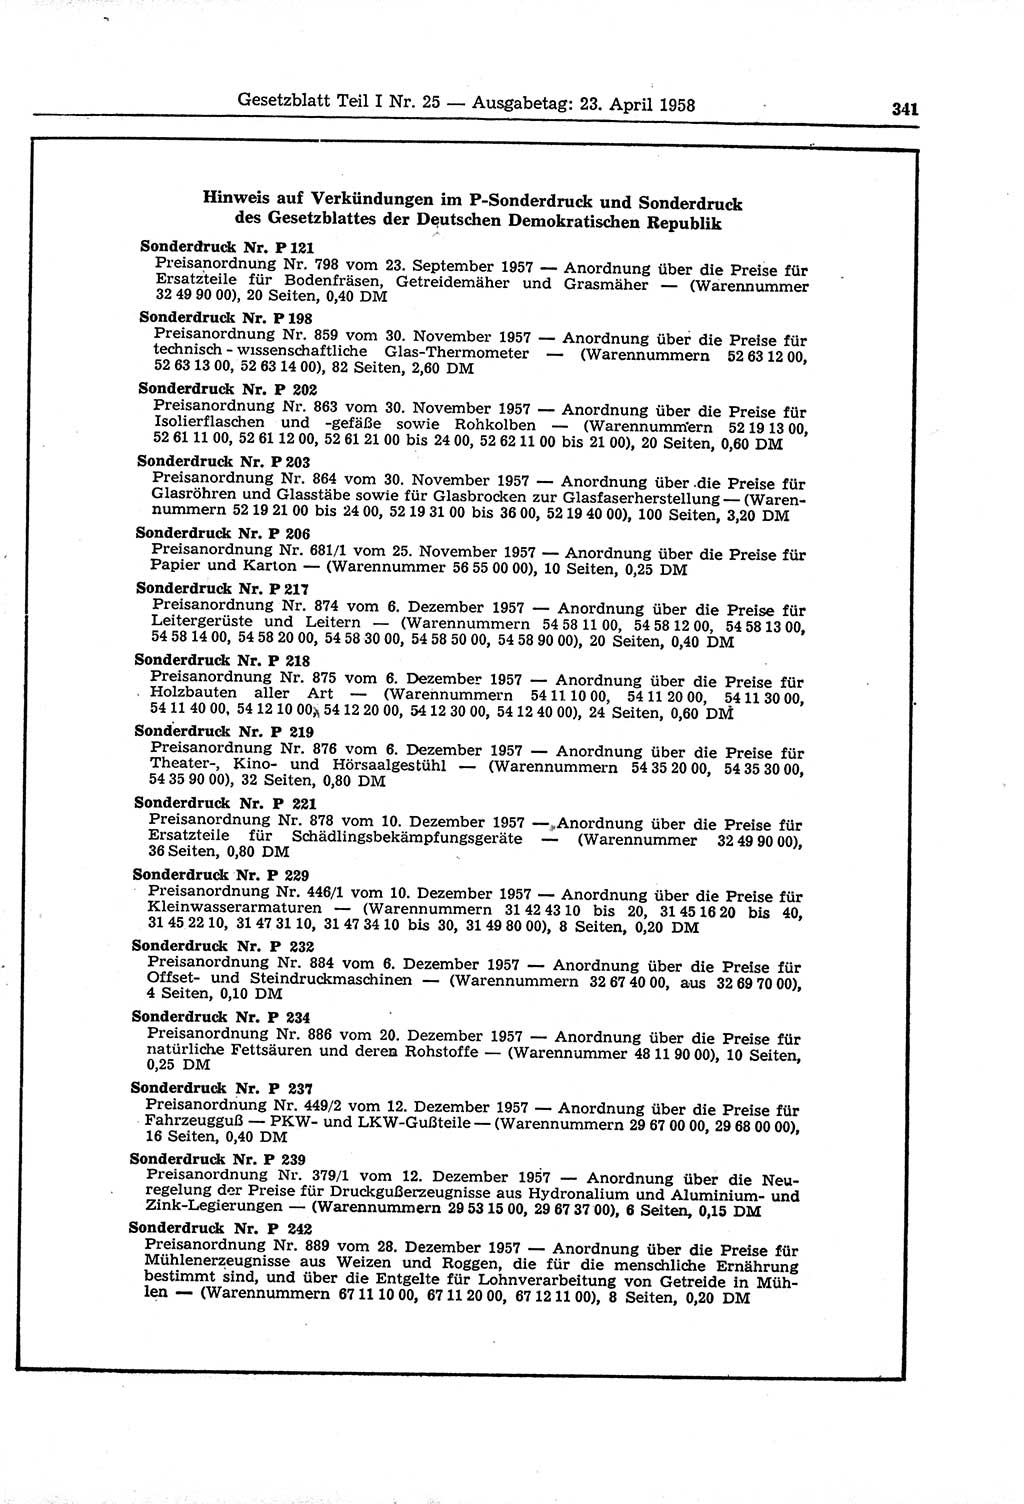 Gesetzblatt (GBl.) der Deutschen Demokratischen Republik (DDR) Teil Ⅰ 1958, Seite 341 (GBl. DDR Ⅰ 1958, S. 341)